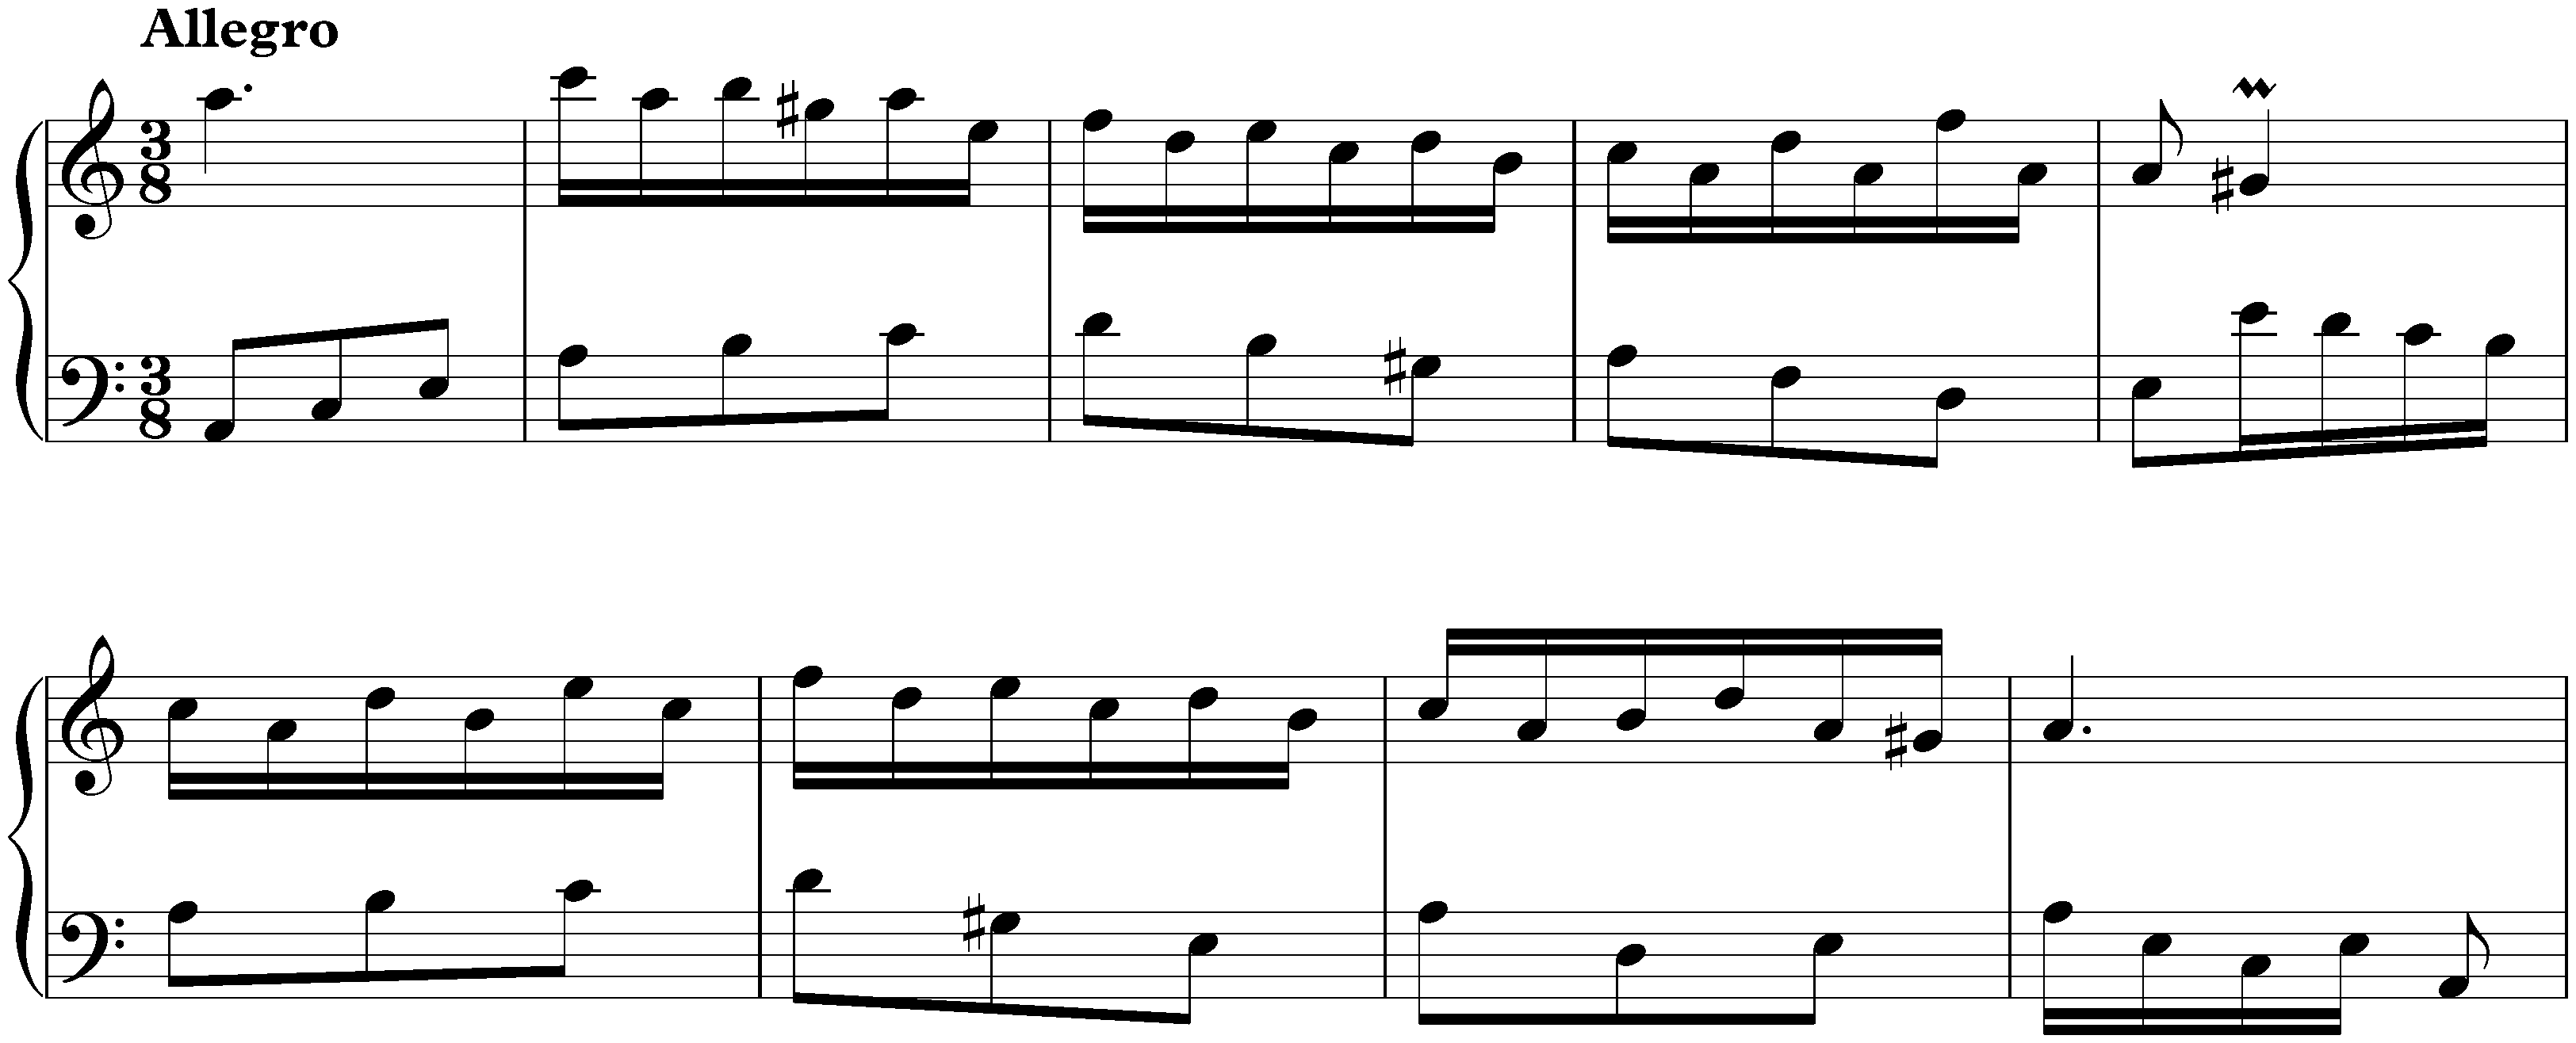 Sonata in A minor, K. 341